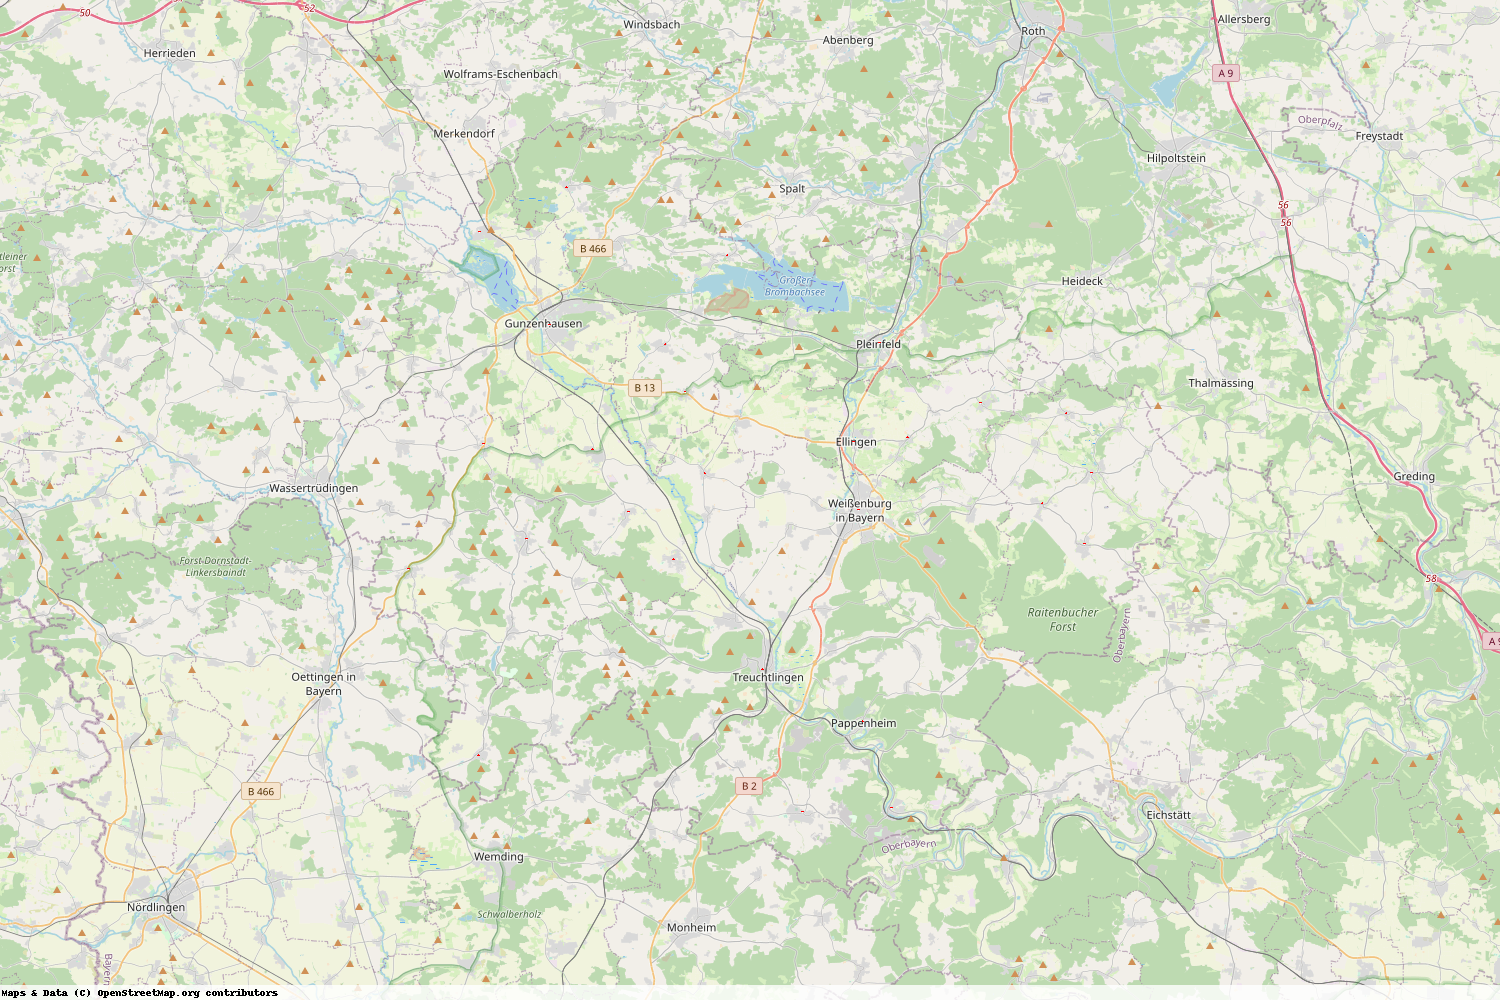 Ist gerade Stromausfall in Bayern - Weißenburg-Gunzenhausen?